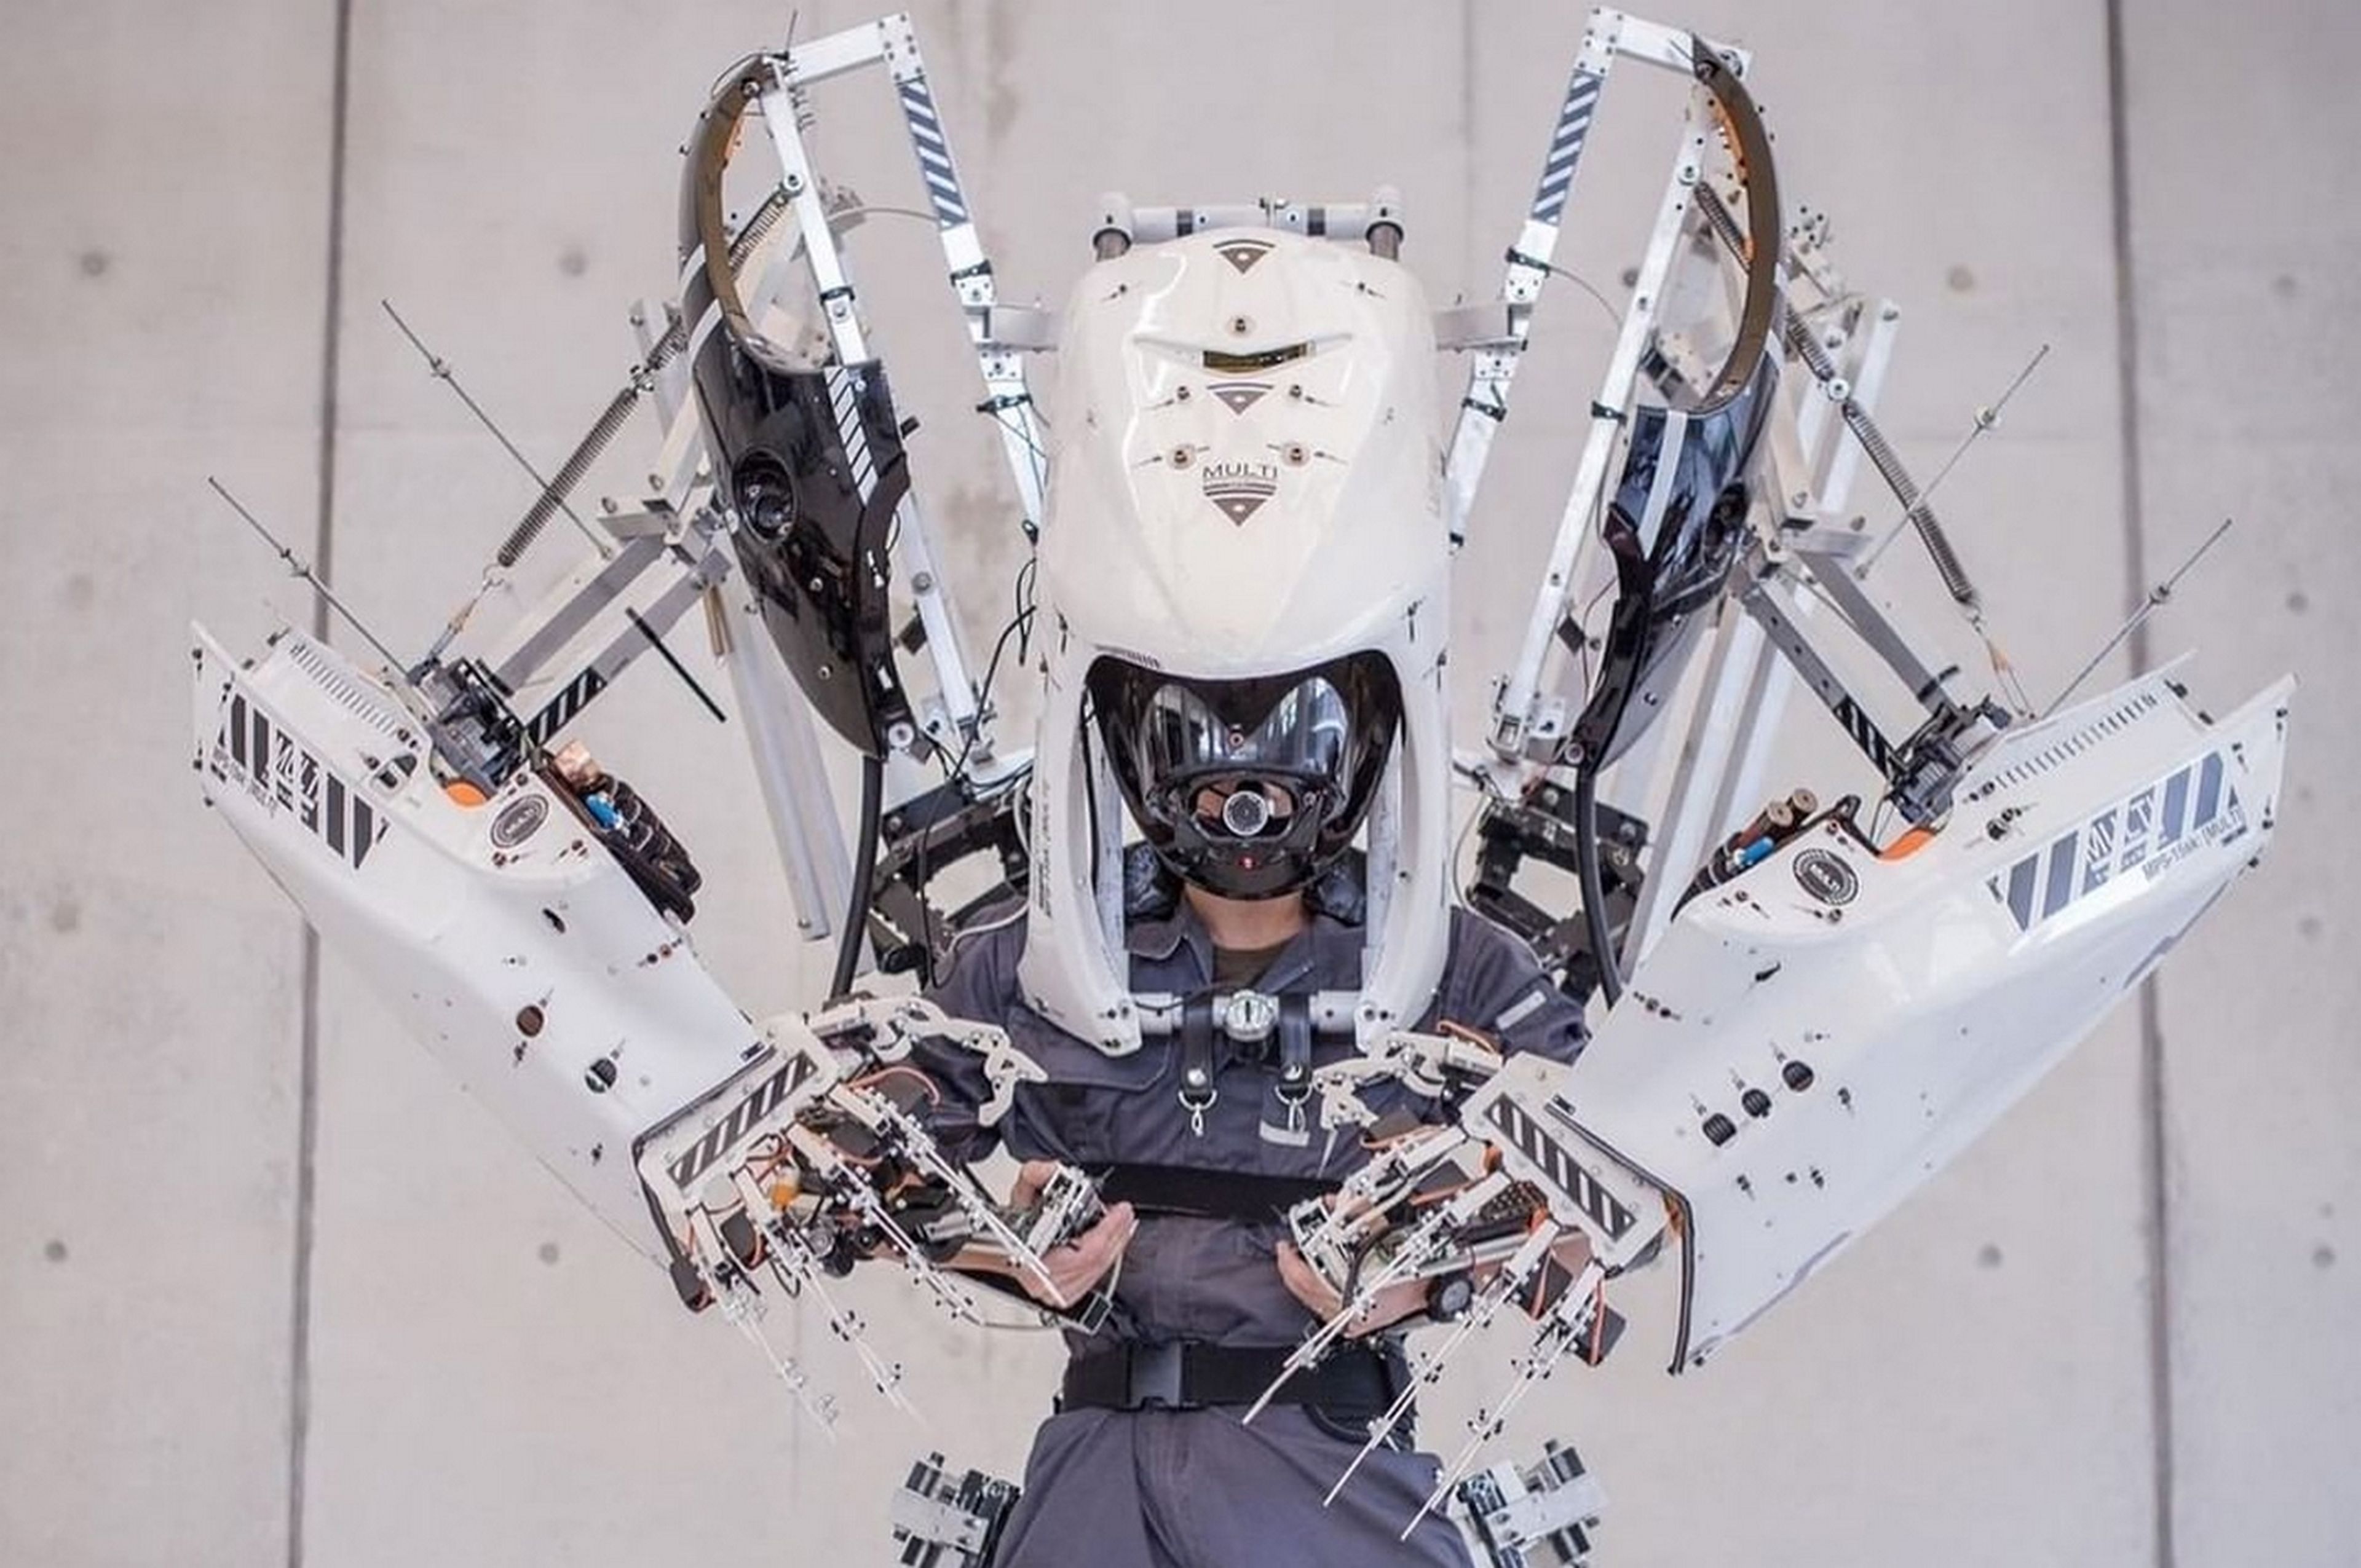 Las increíbles máscaras futuristas del japonés Ikeuchi Hiroto